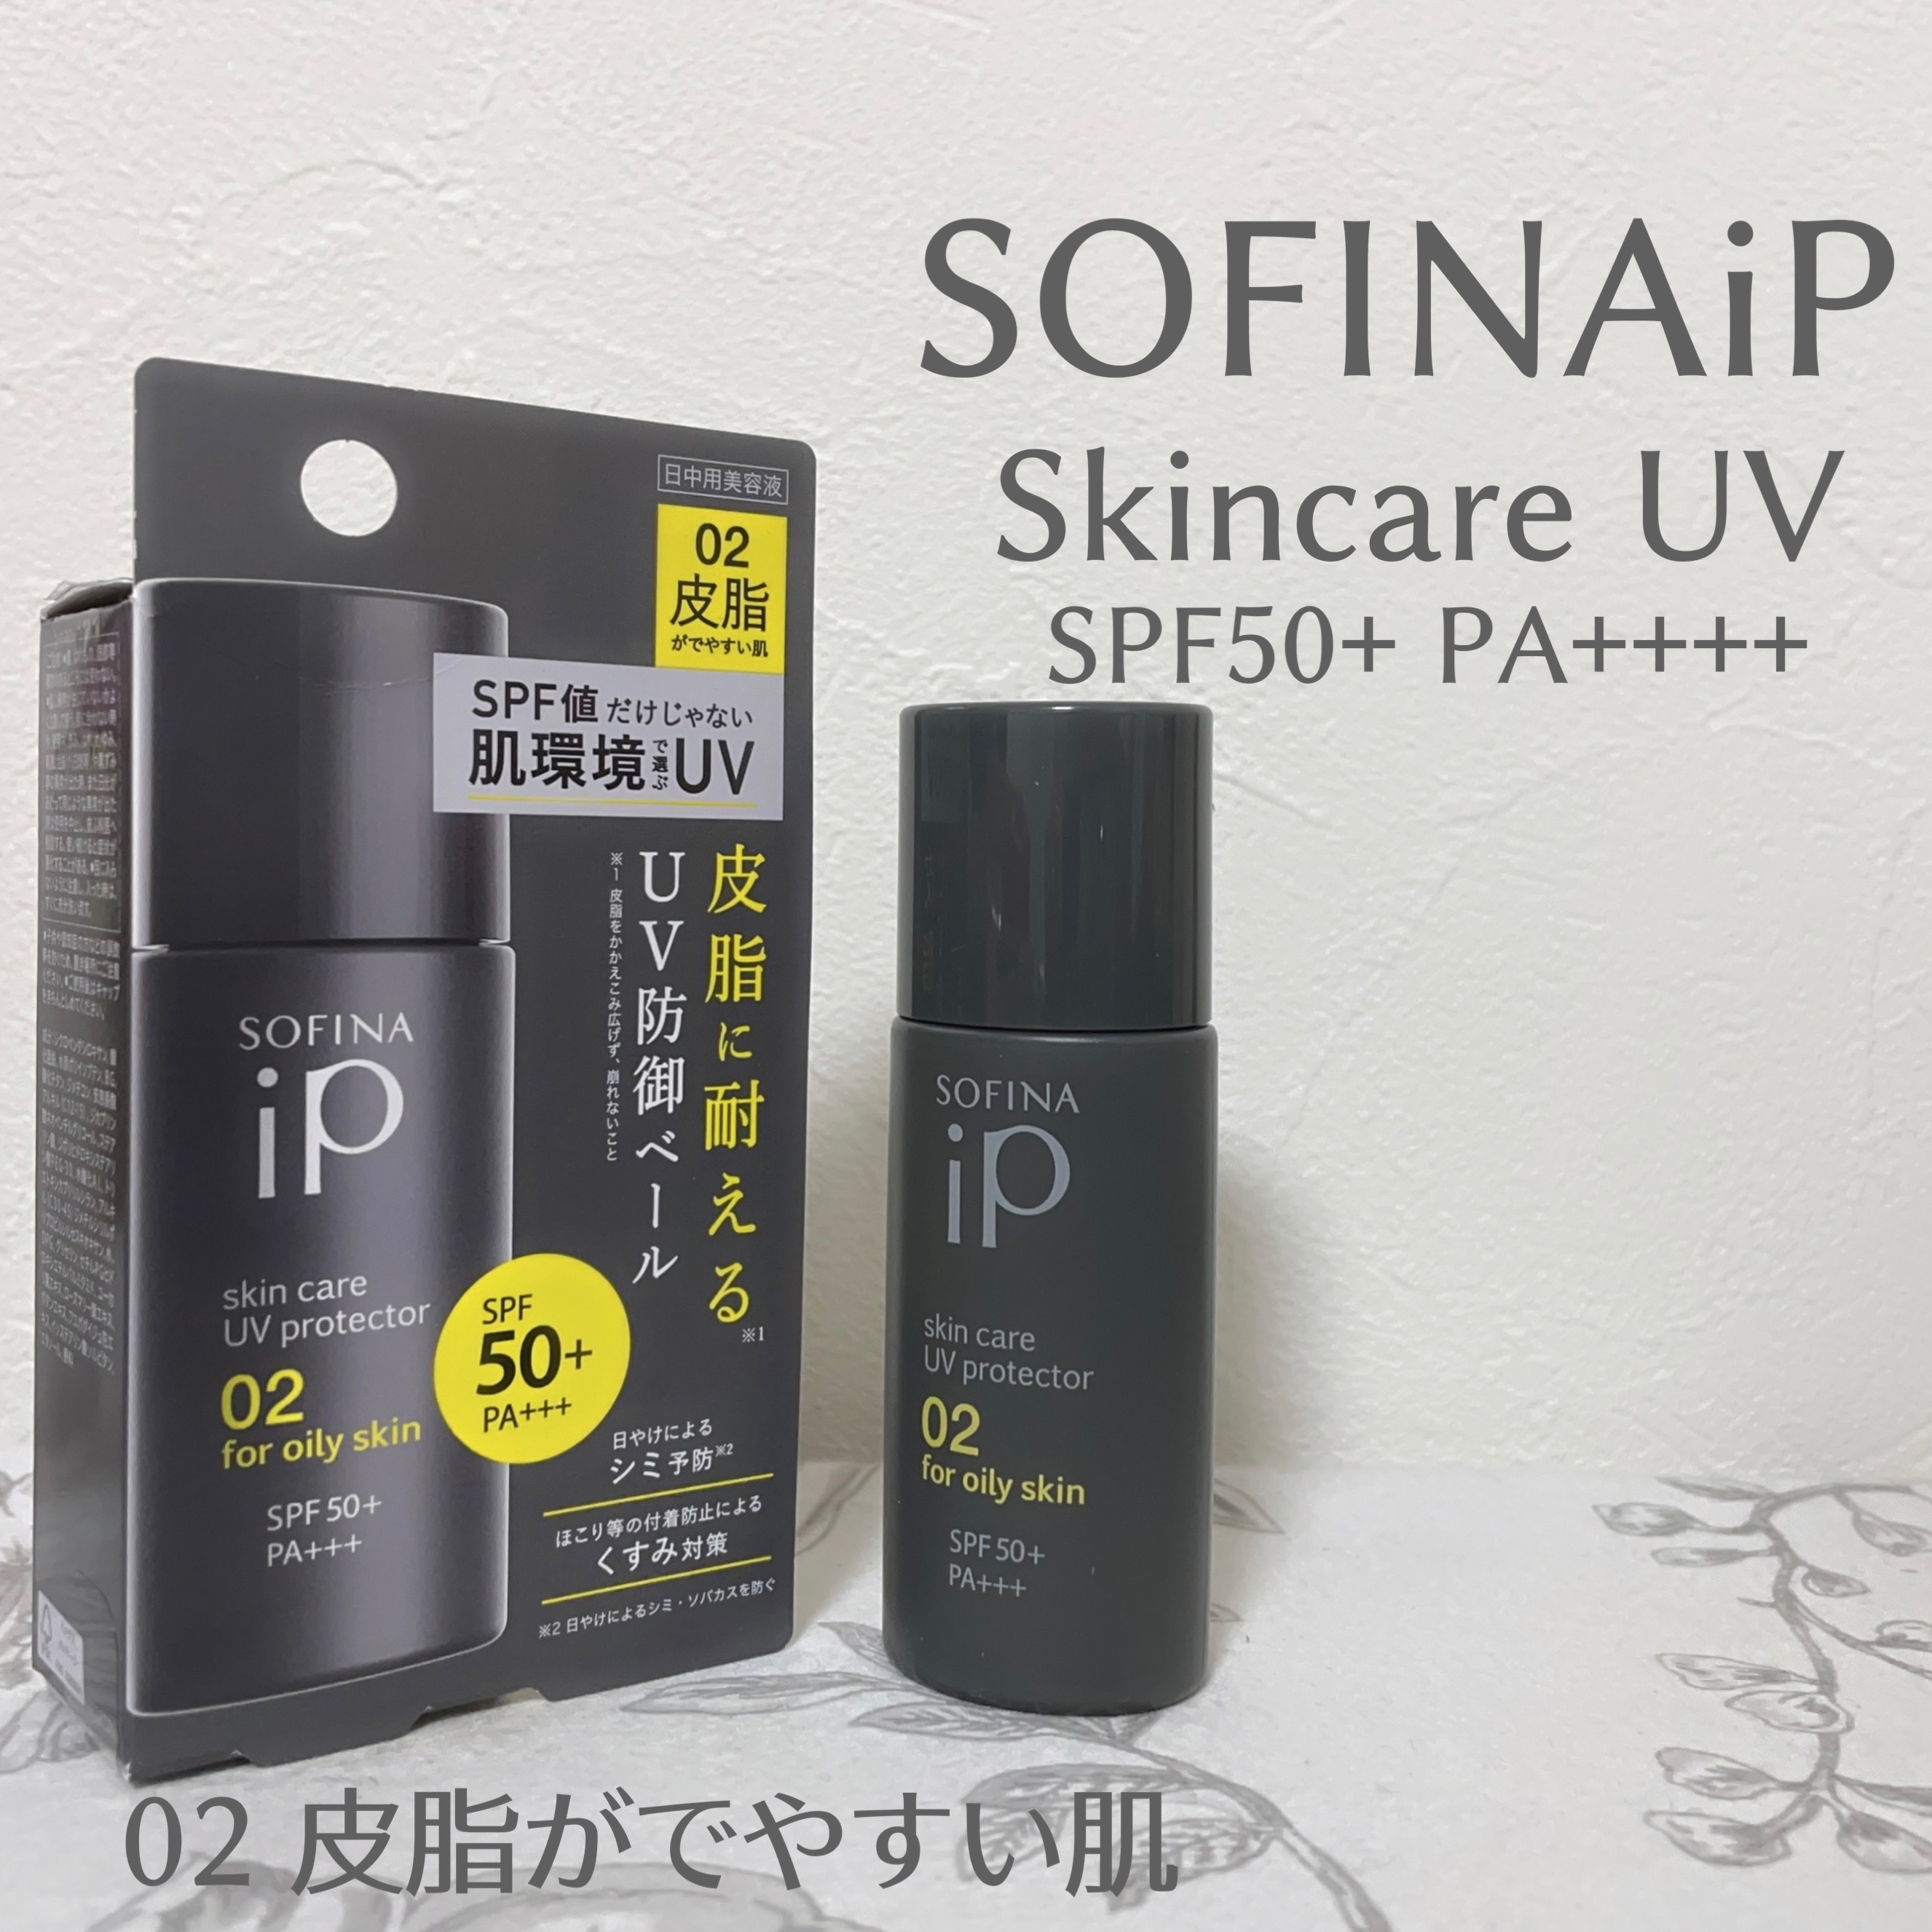 SOFINA iP(ソフィーナ アイピー) スキンケアUV 01乾燥しがちな肌の良い点・メリットに関するもいさんの口コミ画像3